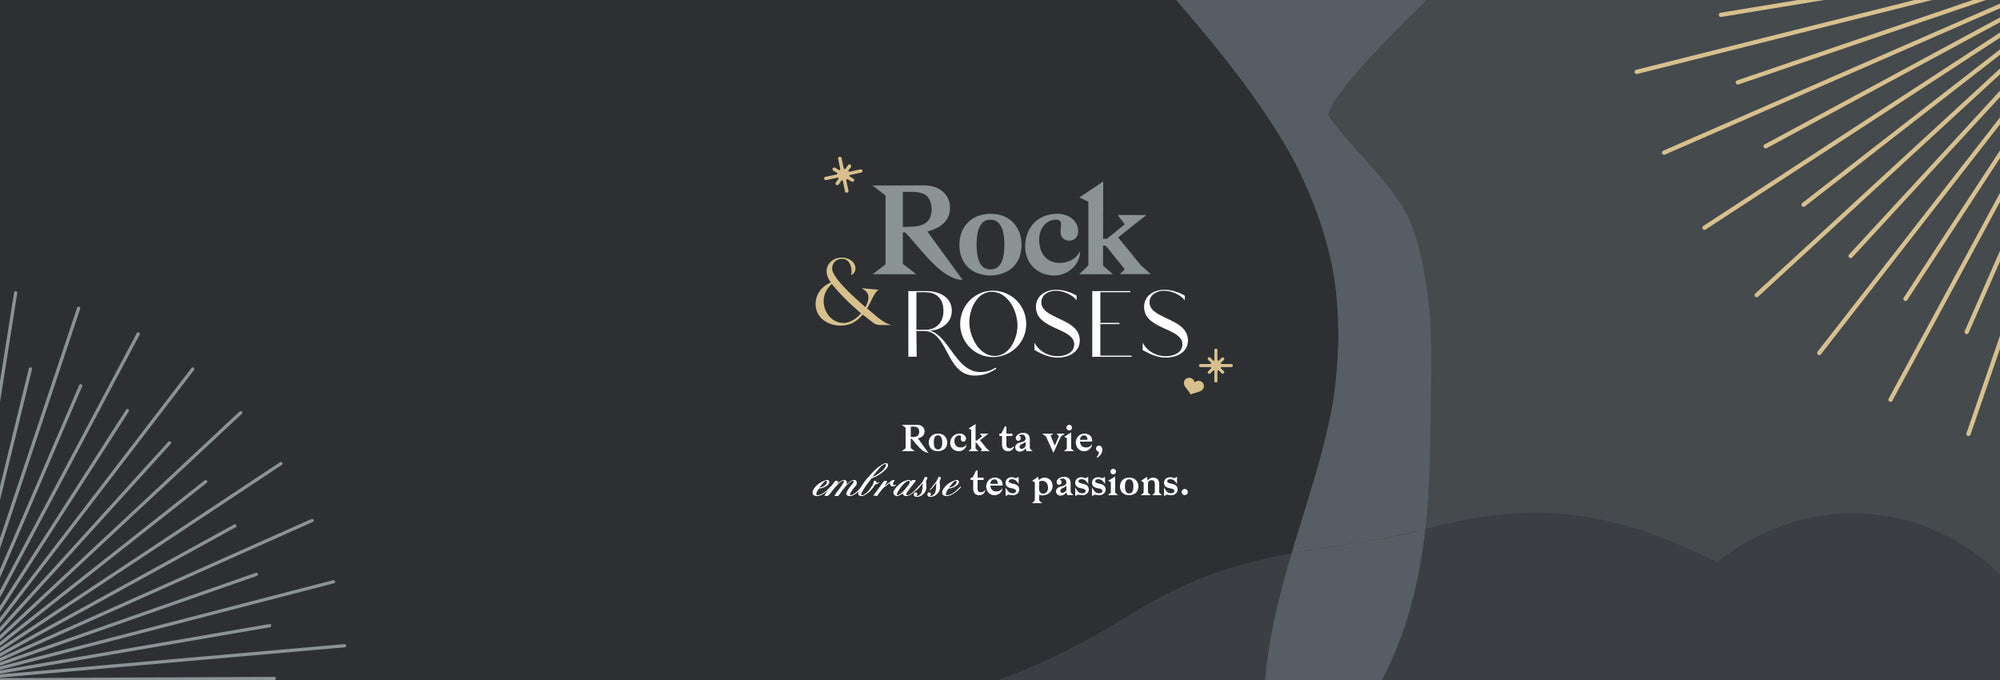 Rock & Roses